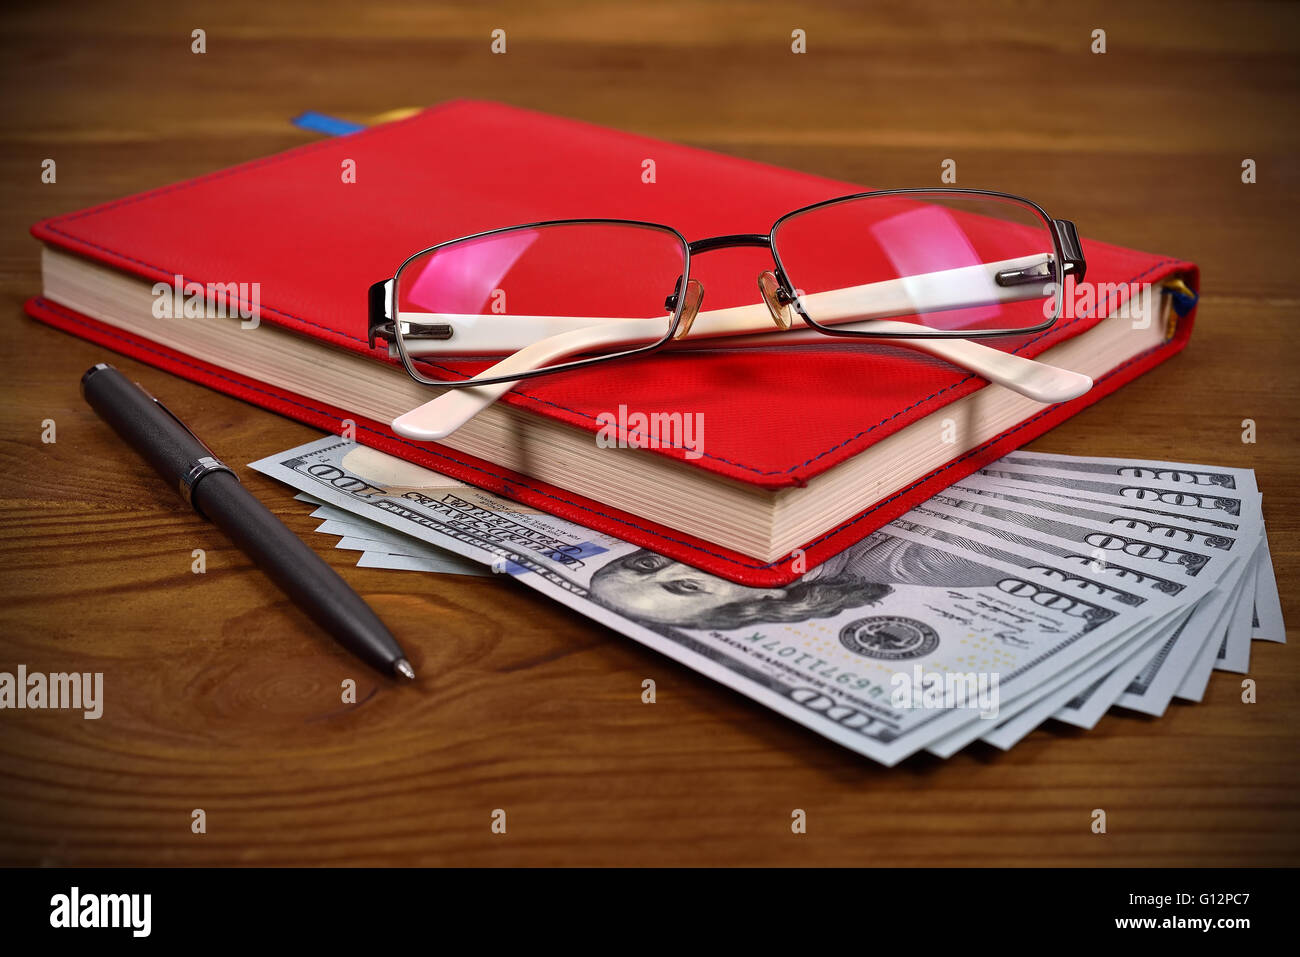 Rosso diario di cuoio, bicchieri, penna e le fatture del dollaro sulla scrivania in legno Foto Stock